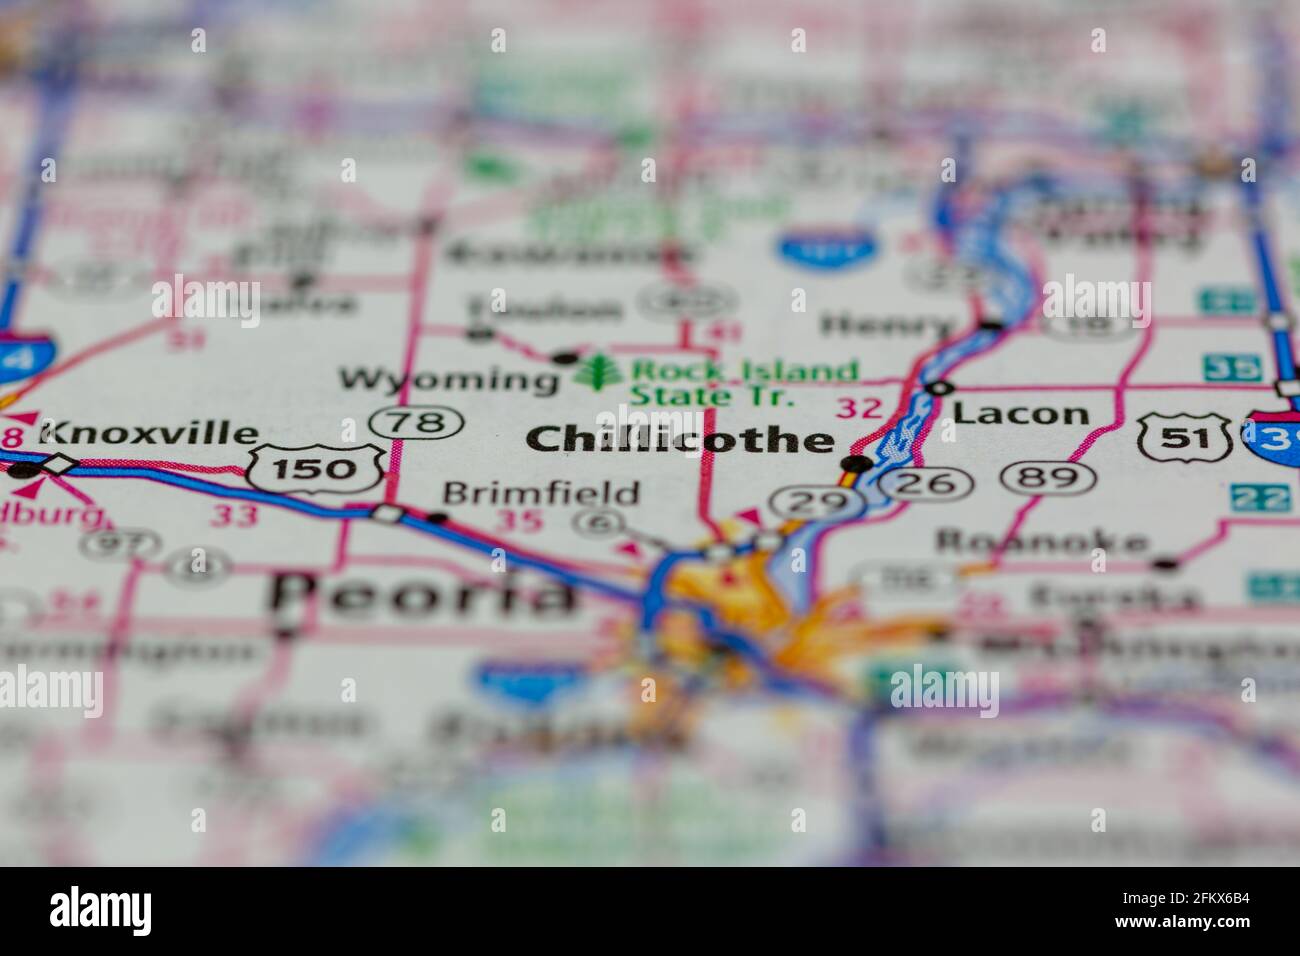 Chillicothe Illinois sur une carte de géographie ou une carte routière Banque D'Images